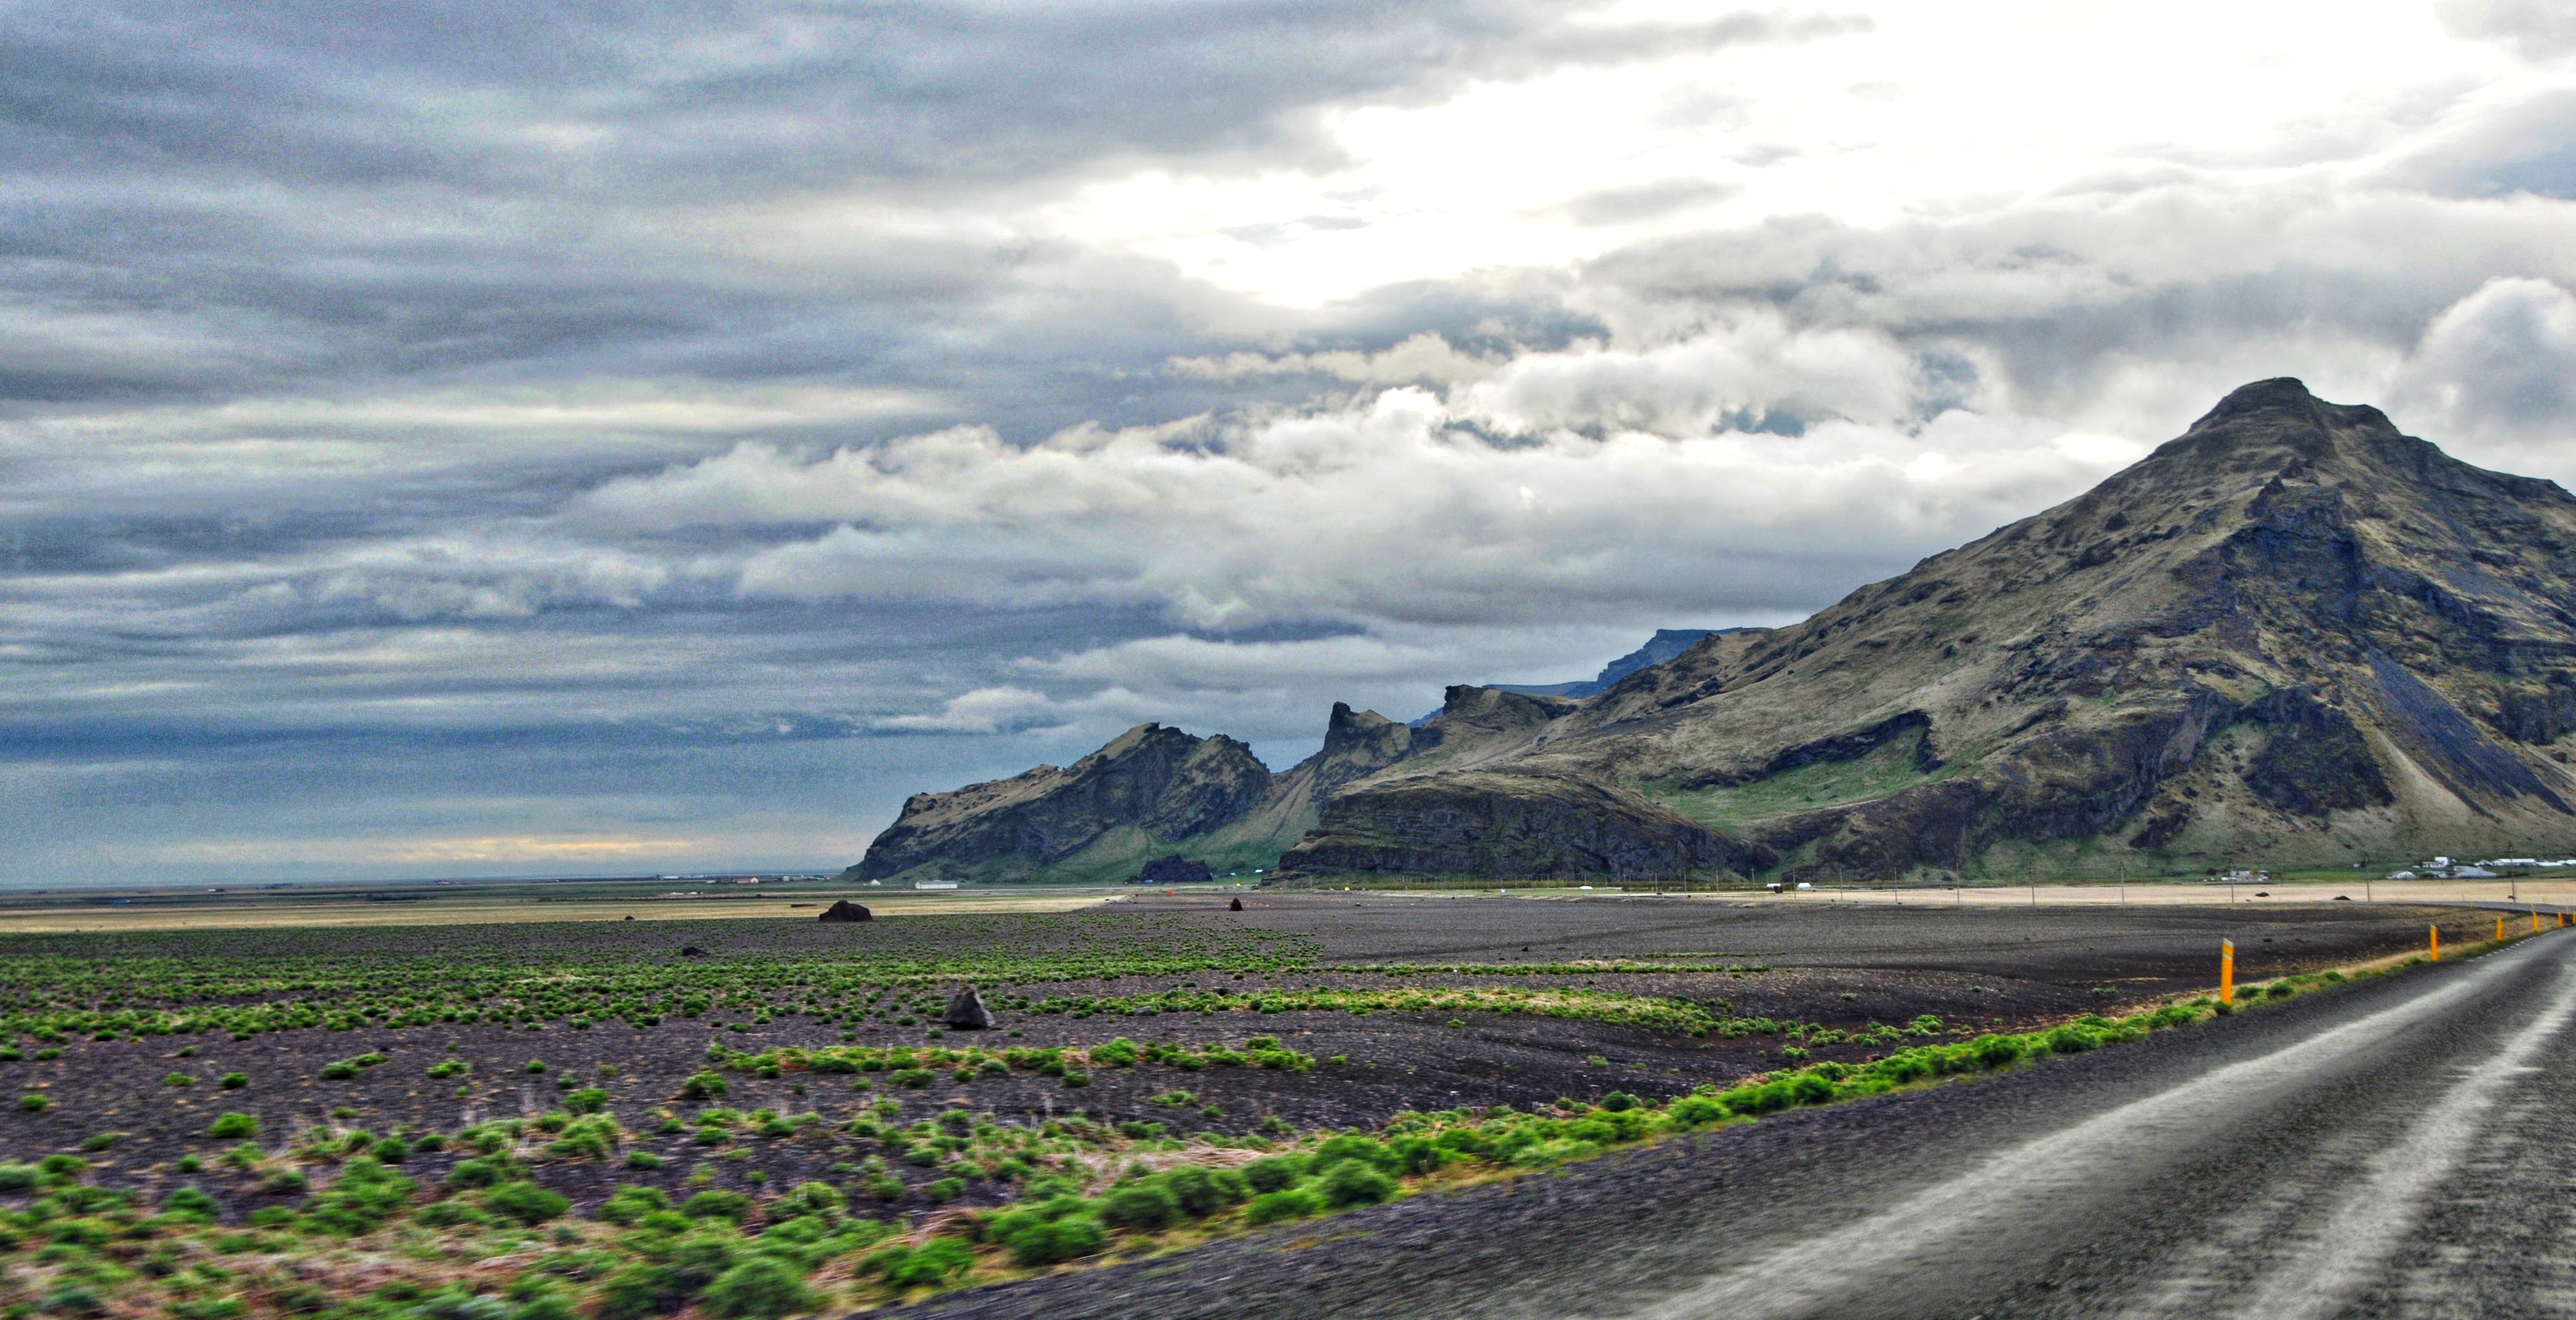 Iceland (18) – Rural Landscapes | The Prosaic Traveller